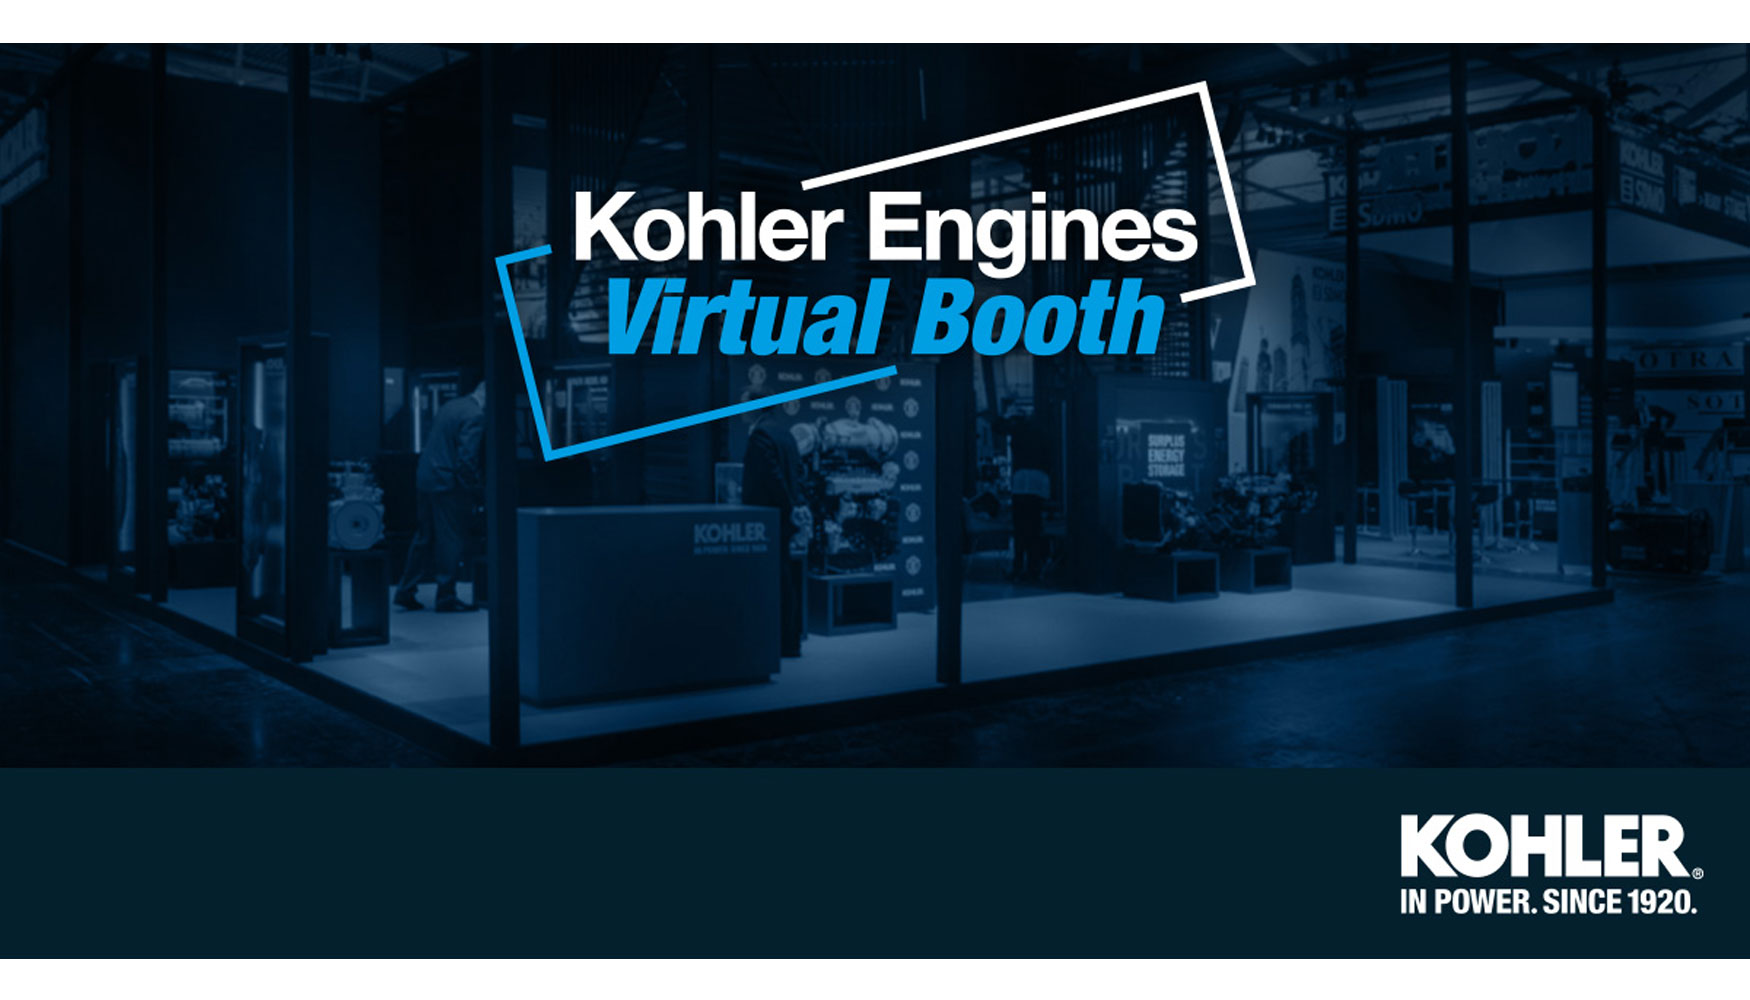 Nuevo stand virtual de Kohler